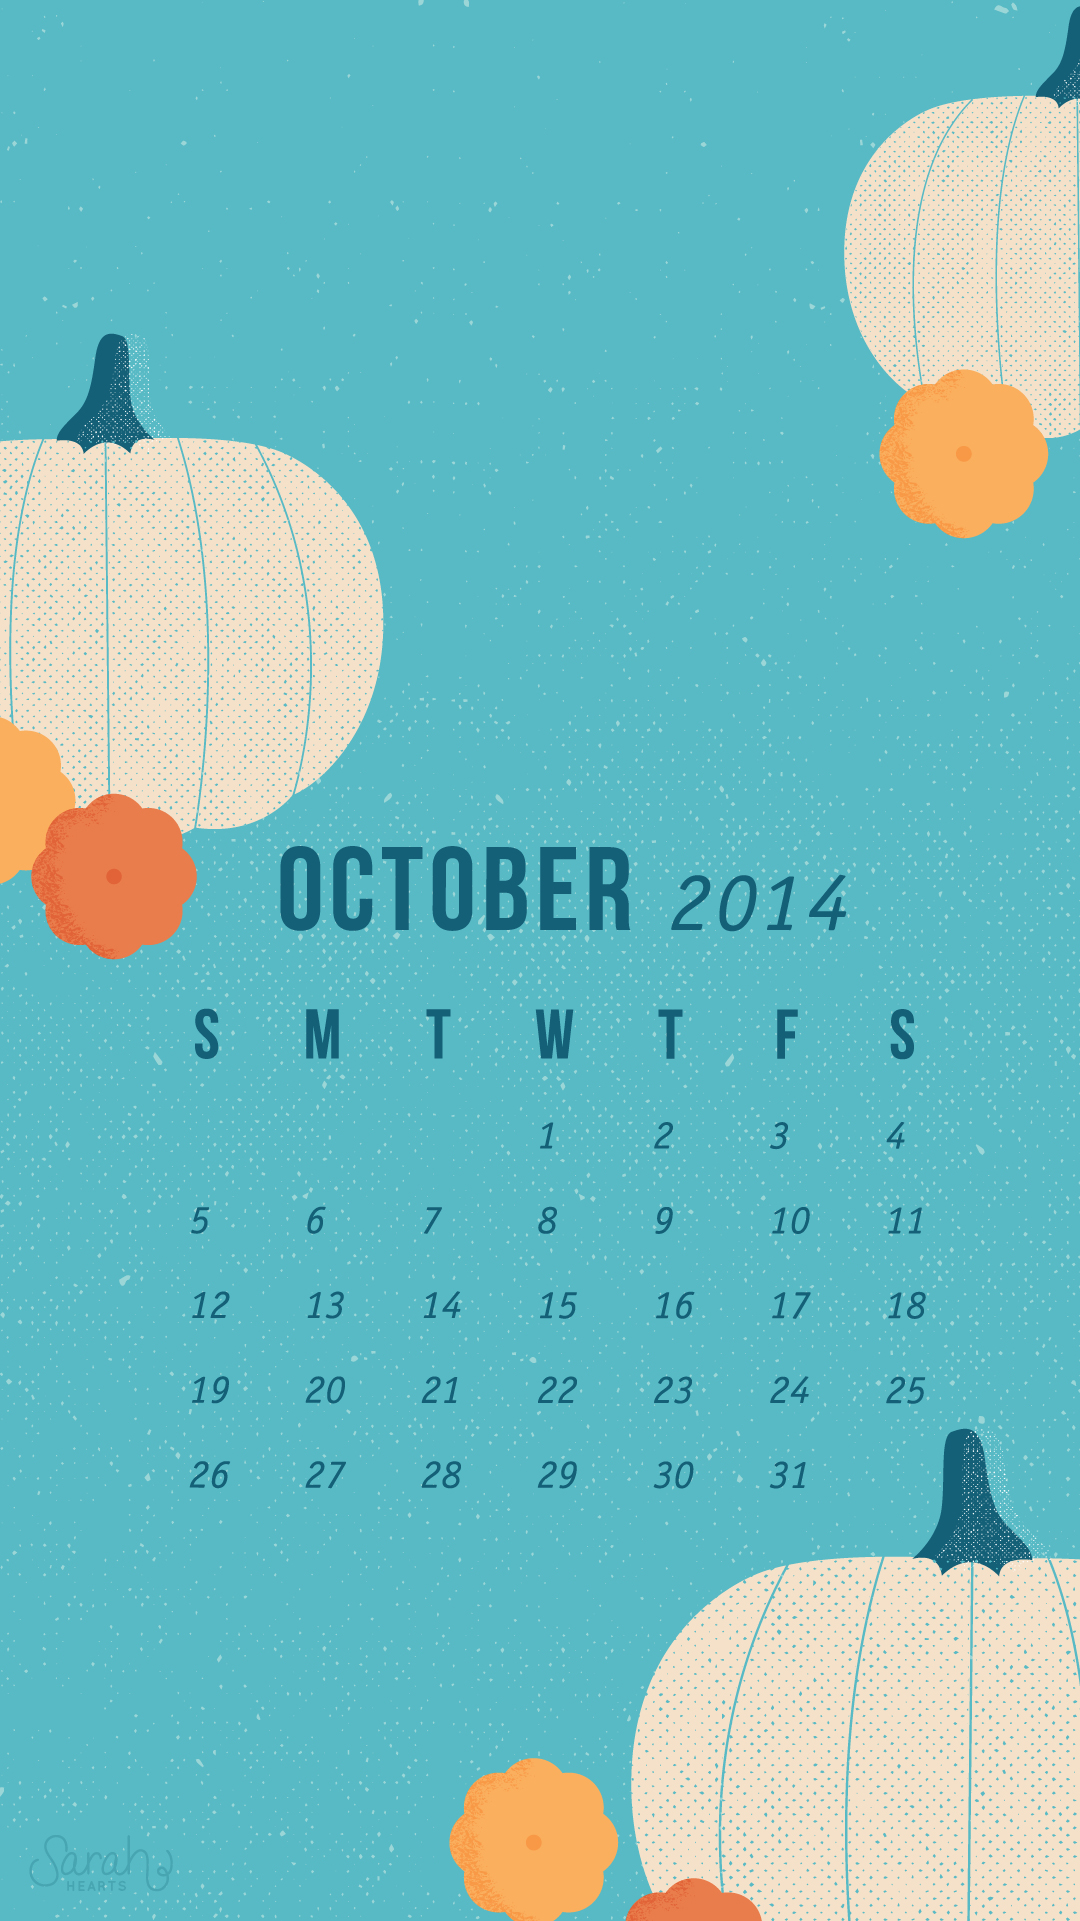 October 2014 Calendar Wallpapers - Sarah Hearts1080 x 1921